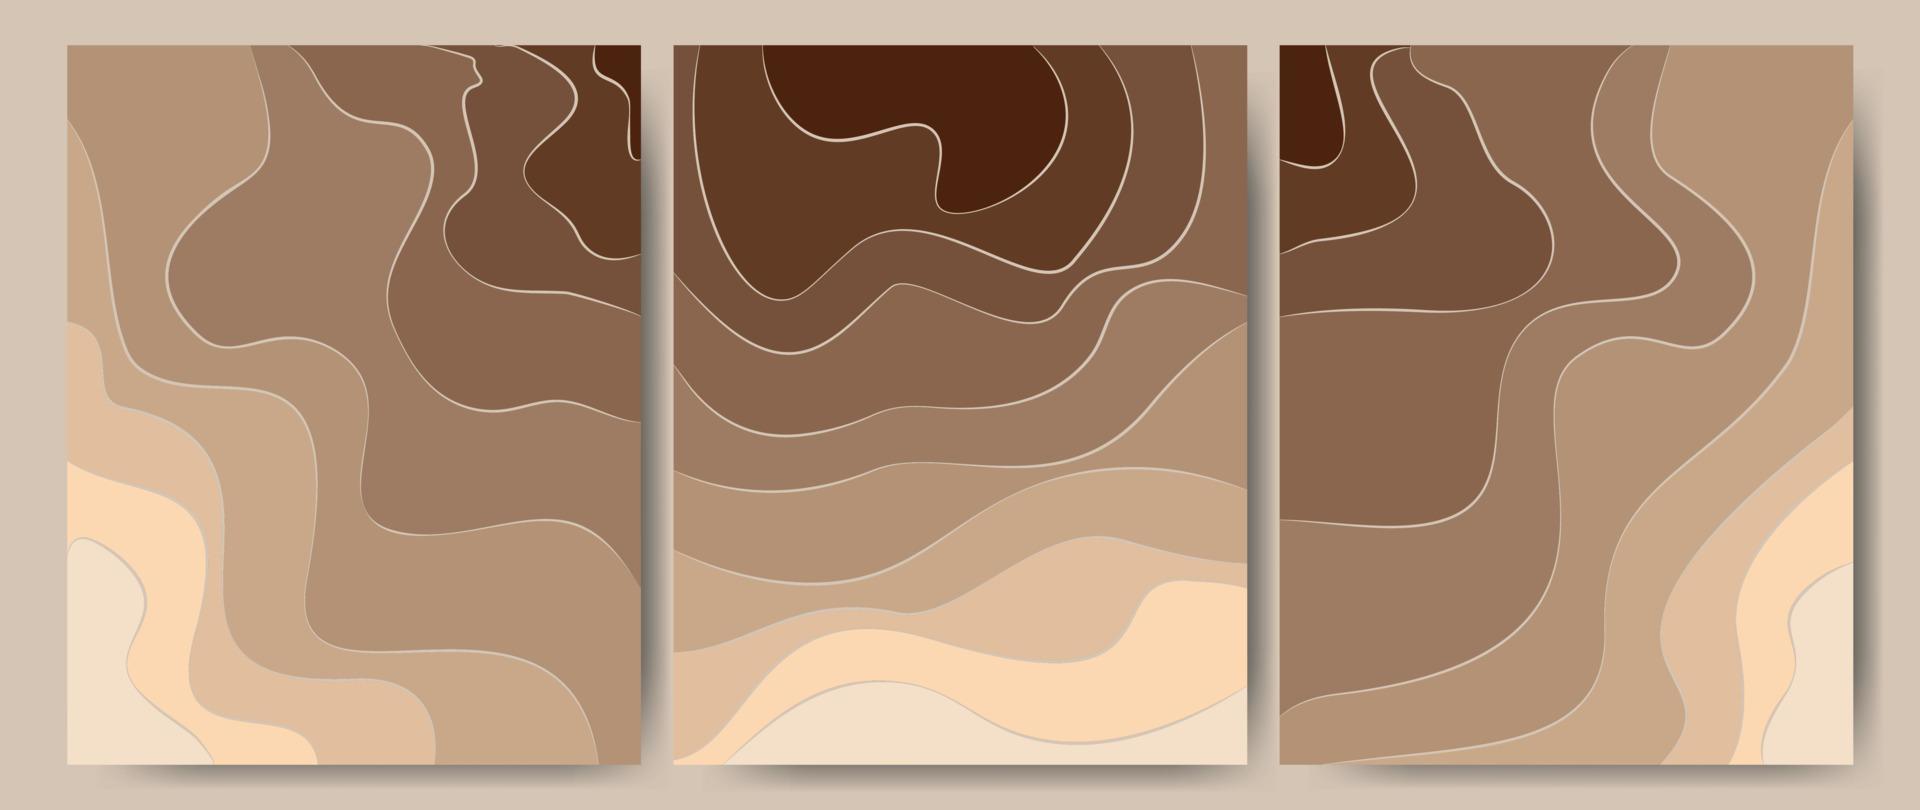 arena de fondo de arte de banner abstracto en la playa, costa o desierto con color beige barchan y dunas. textura de arena de tarjeta de plantilla con líneas onduladas de patrón. ideal para cubiertas, impresiones de tela. Ilustración de vector. vector